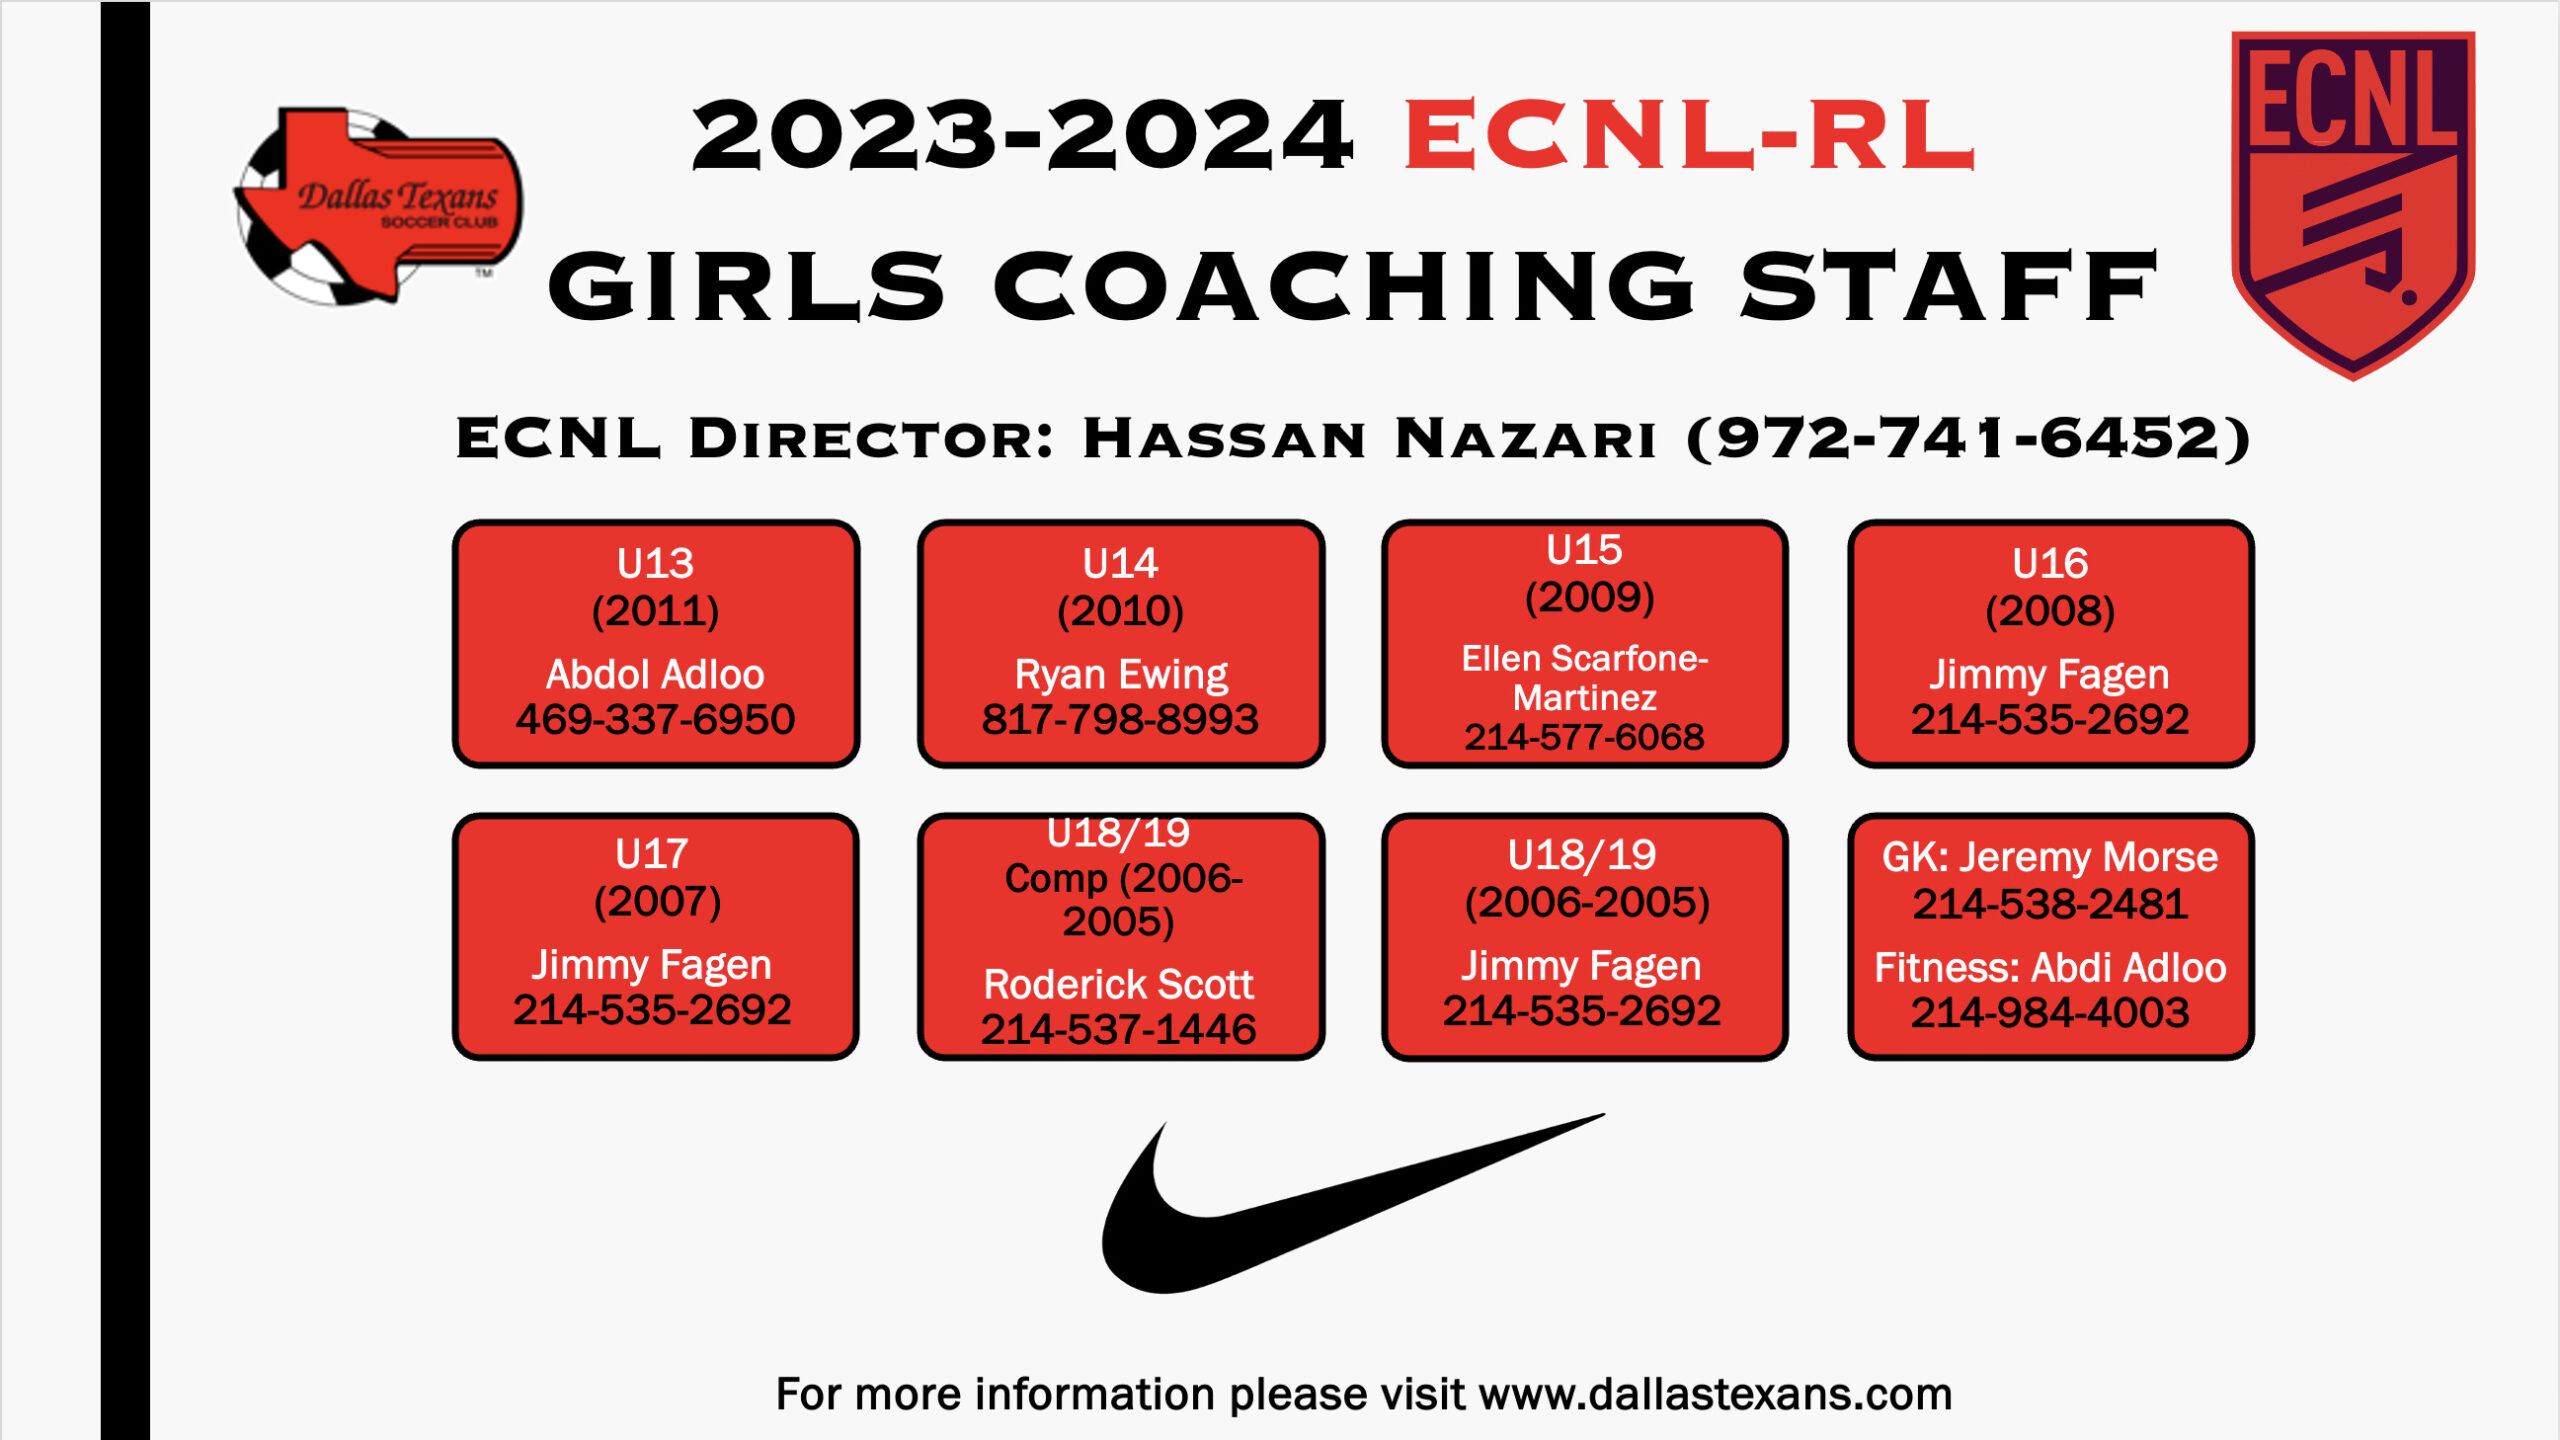 ECNL-RL Girls